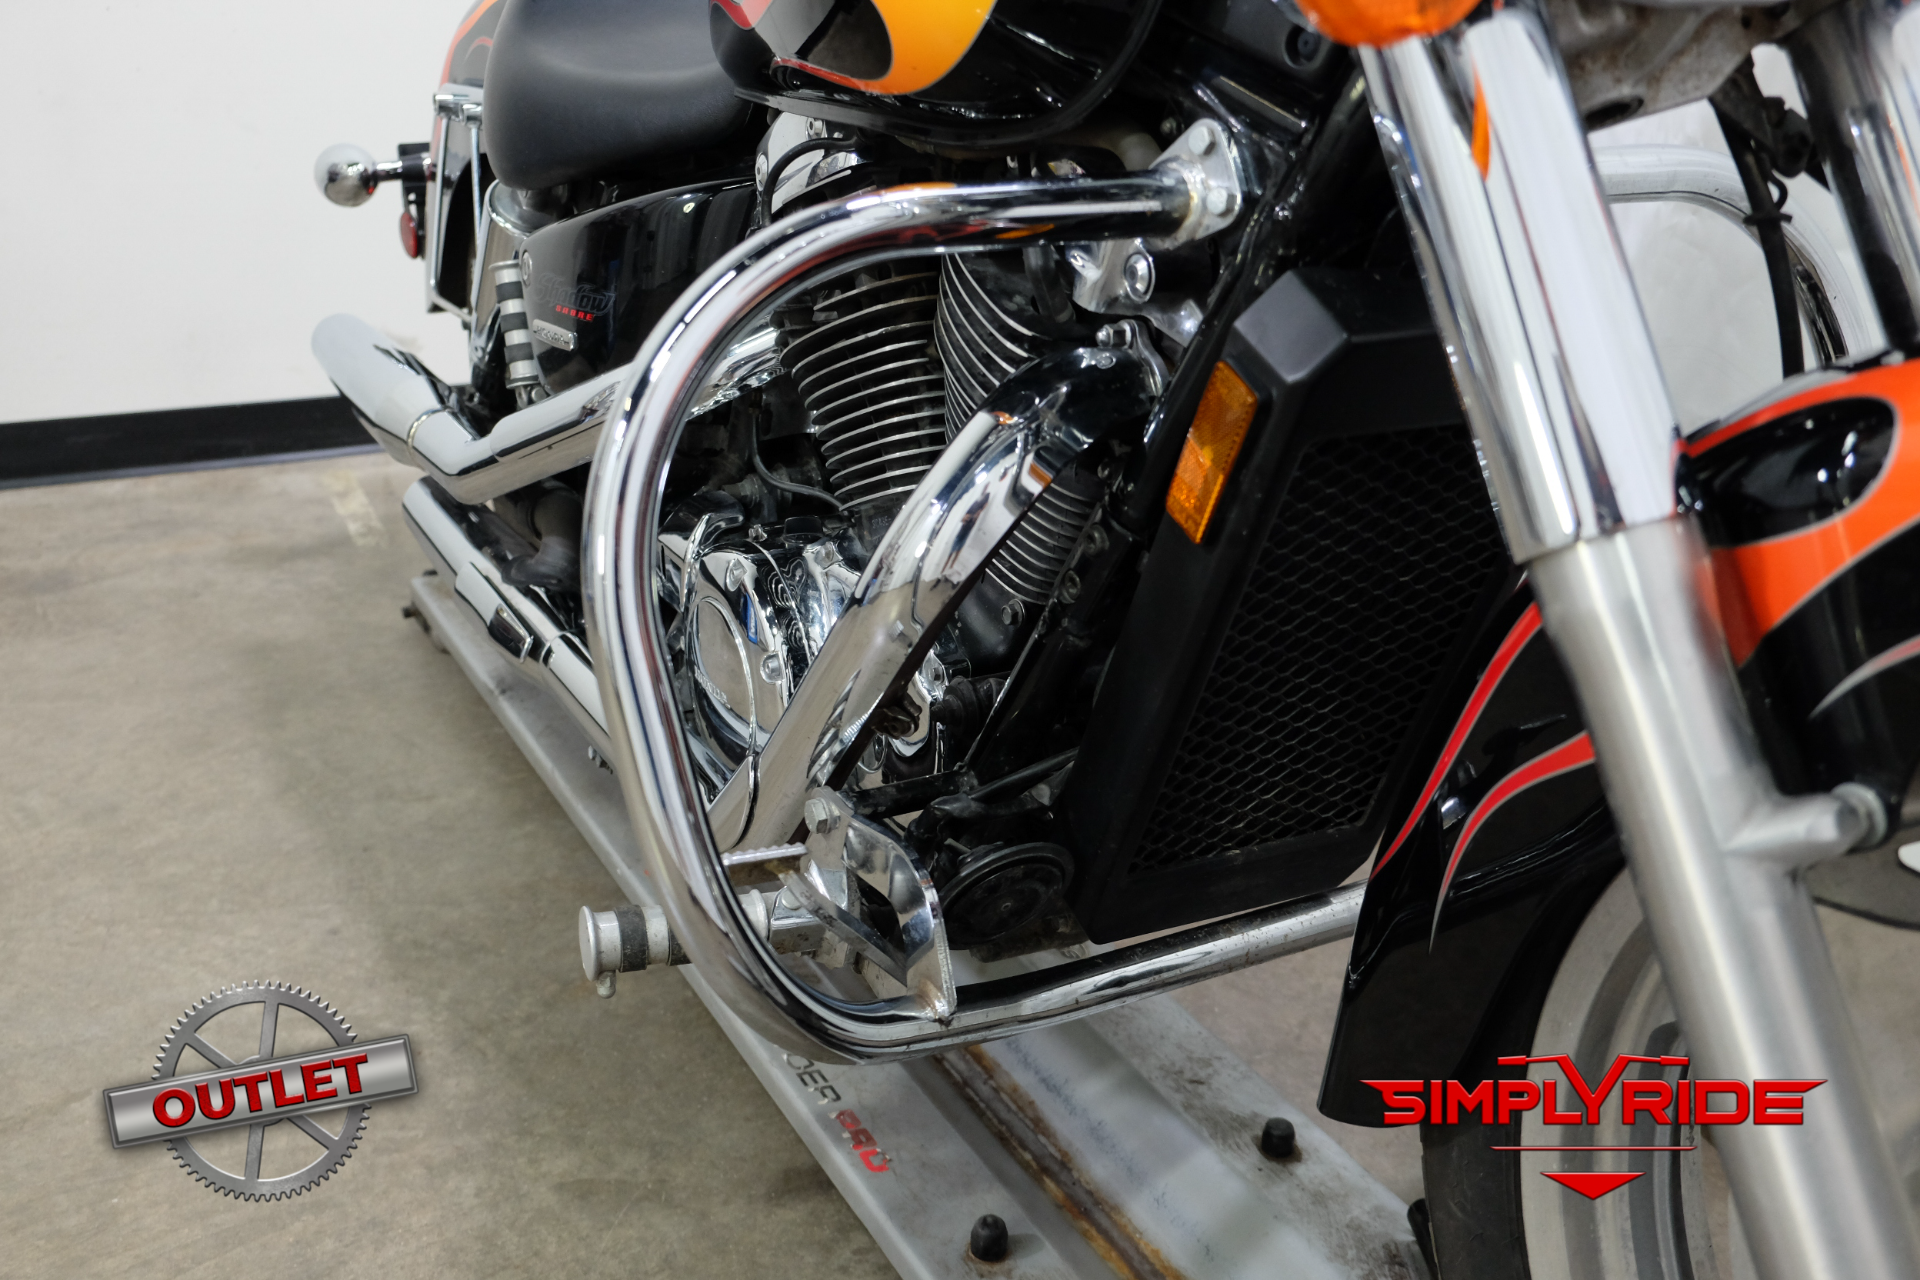 Motorcycle 1/" Handlebars Hand Grips For Honda VTX1300 VTX1800 Sabre VT1100 1300